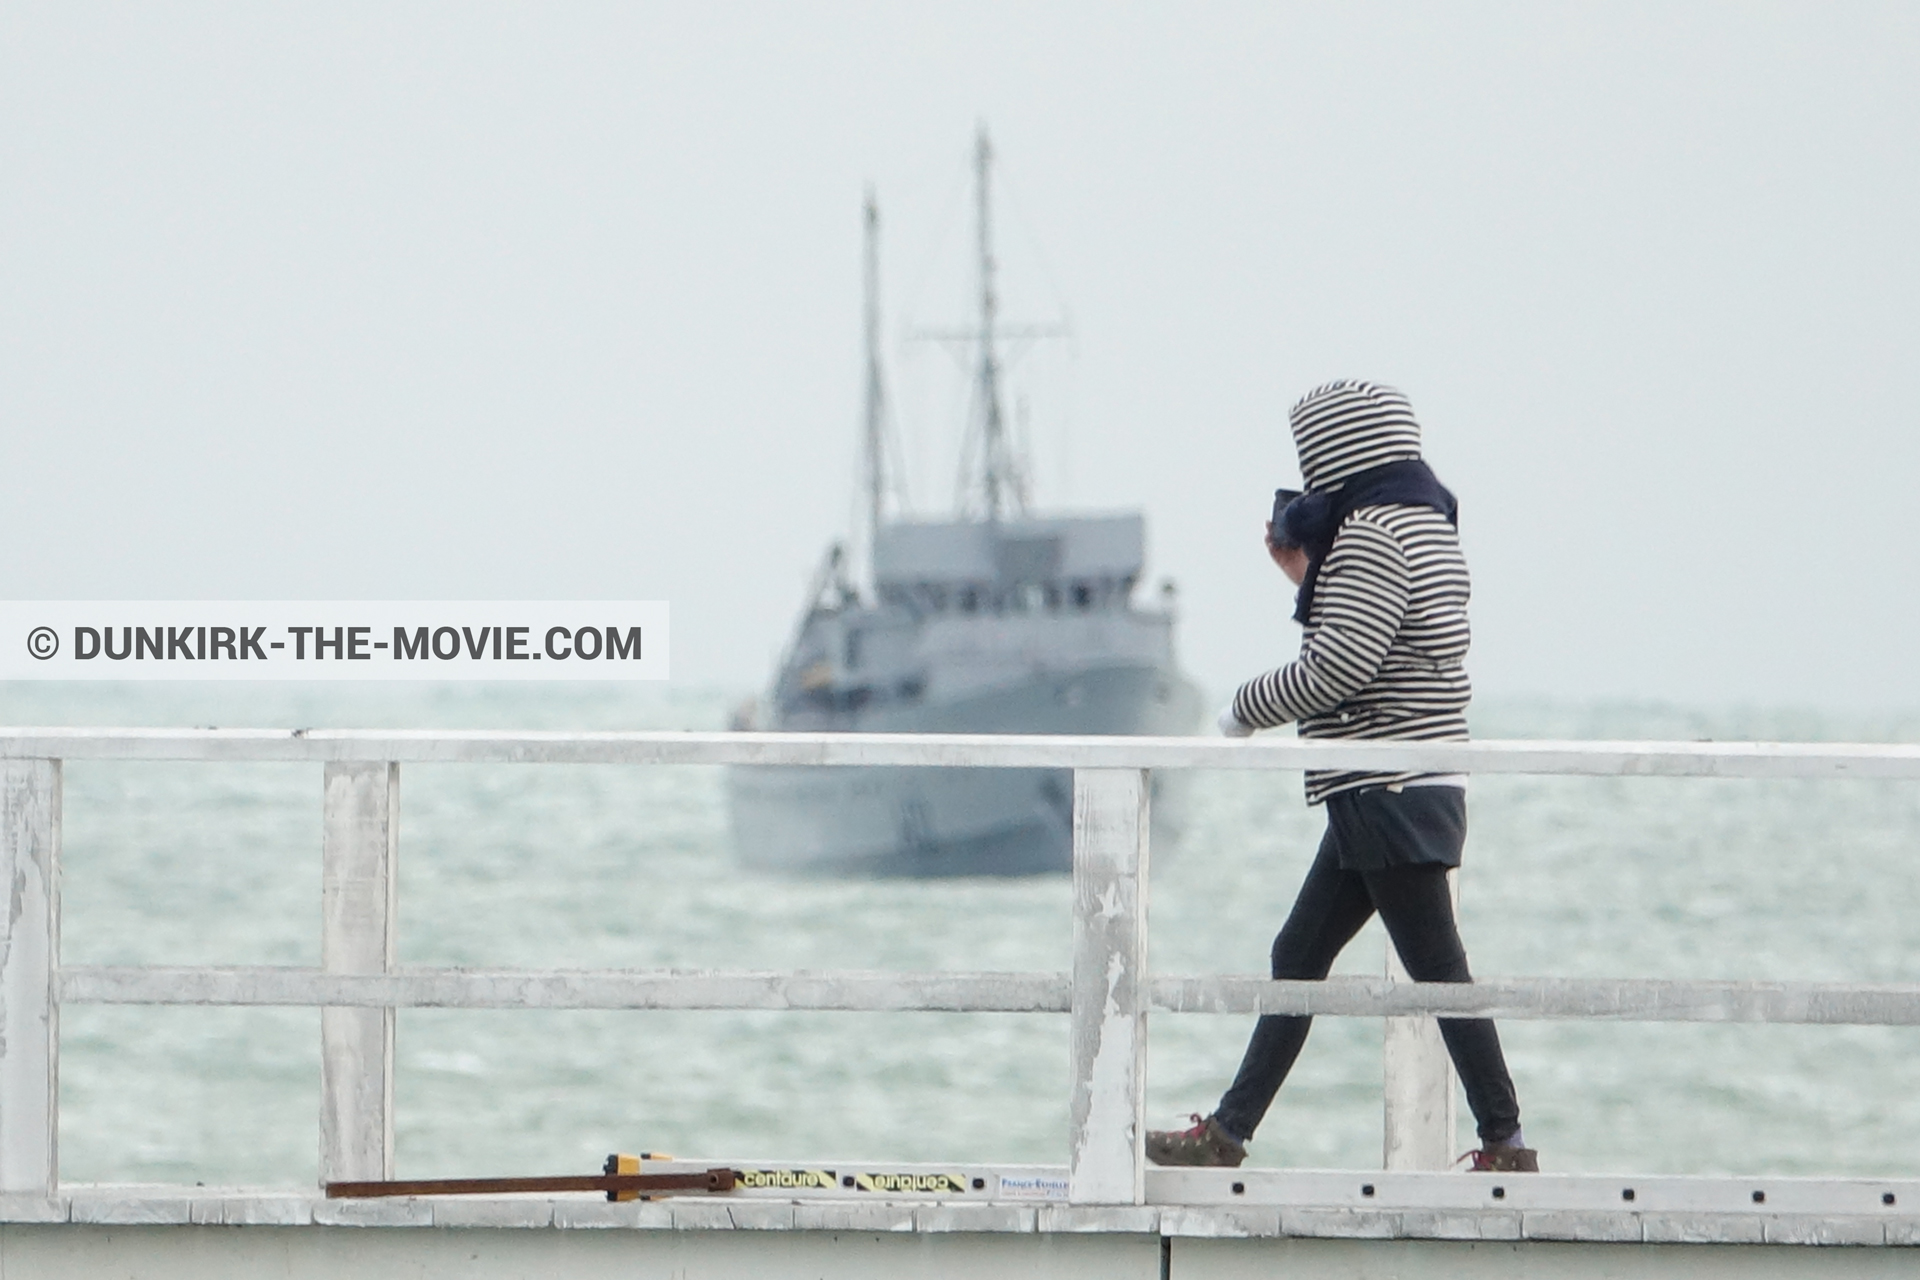 Fotos con barco, cielo gris, muelle del ESTE,  durante el rodaje de la película Dunkerque de Nolan